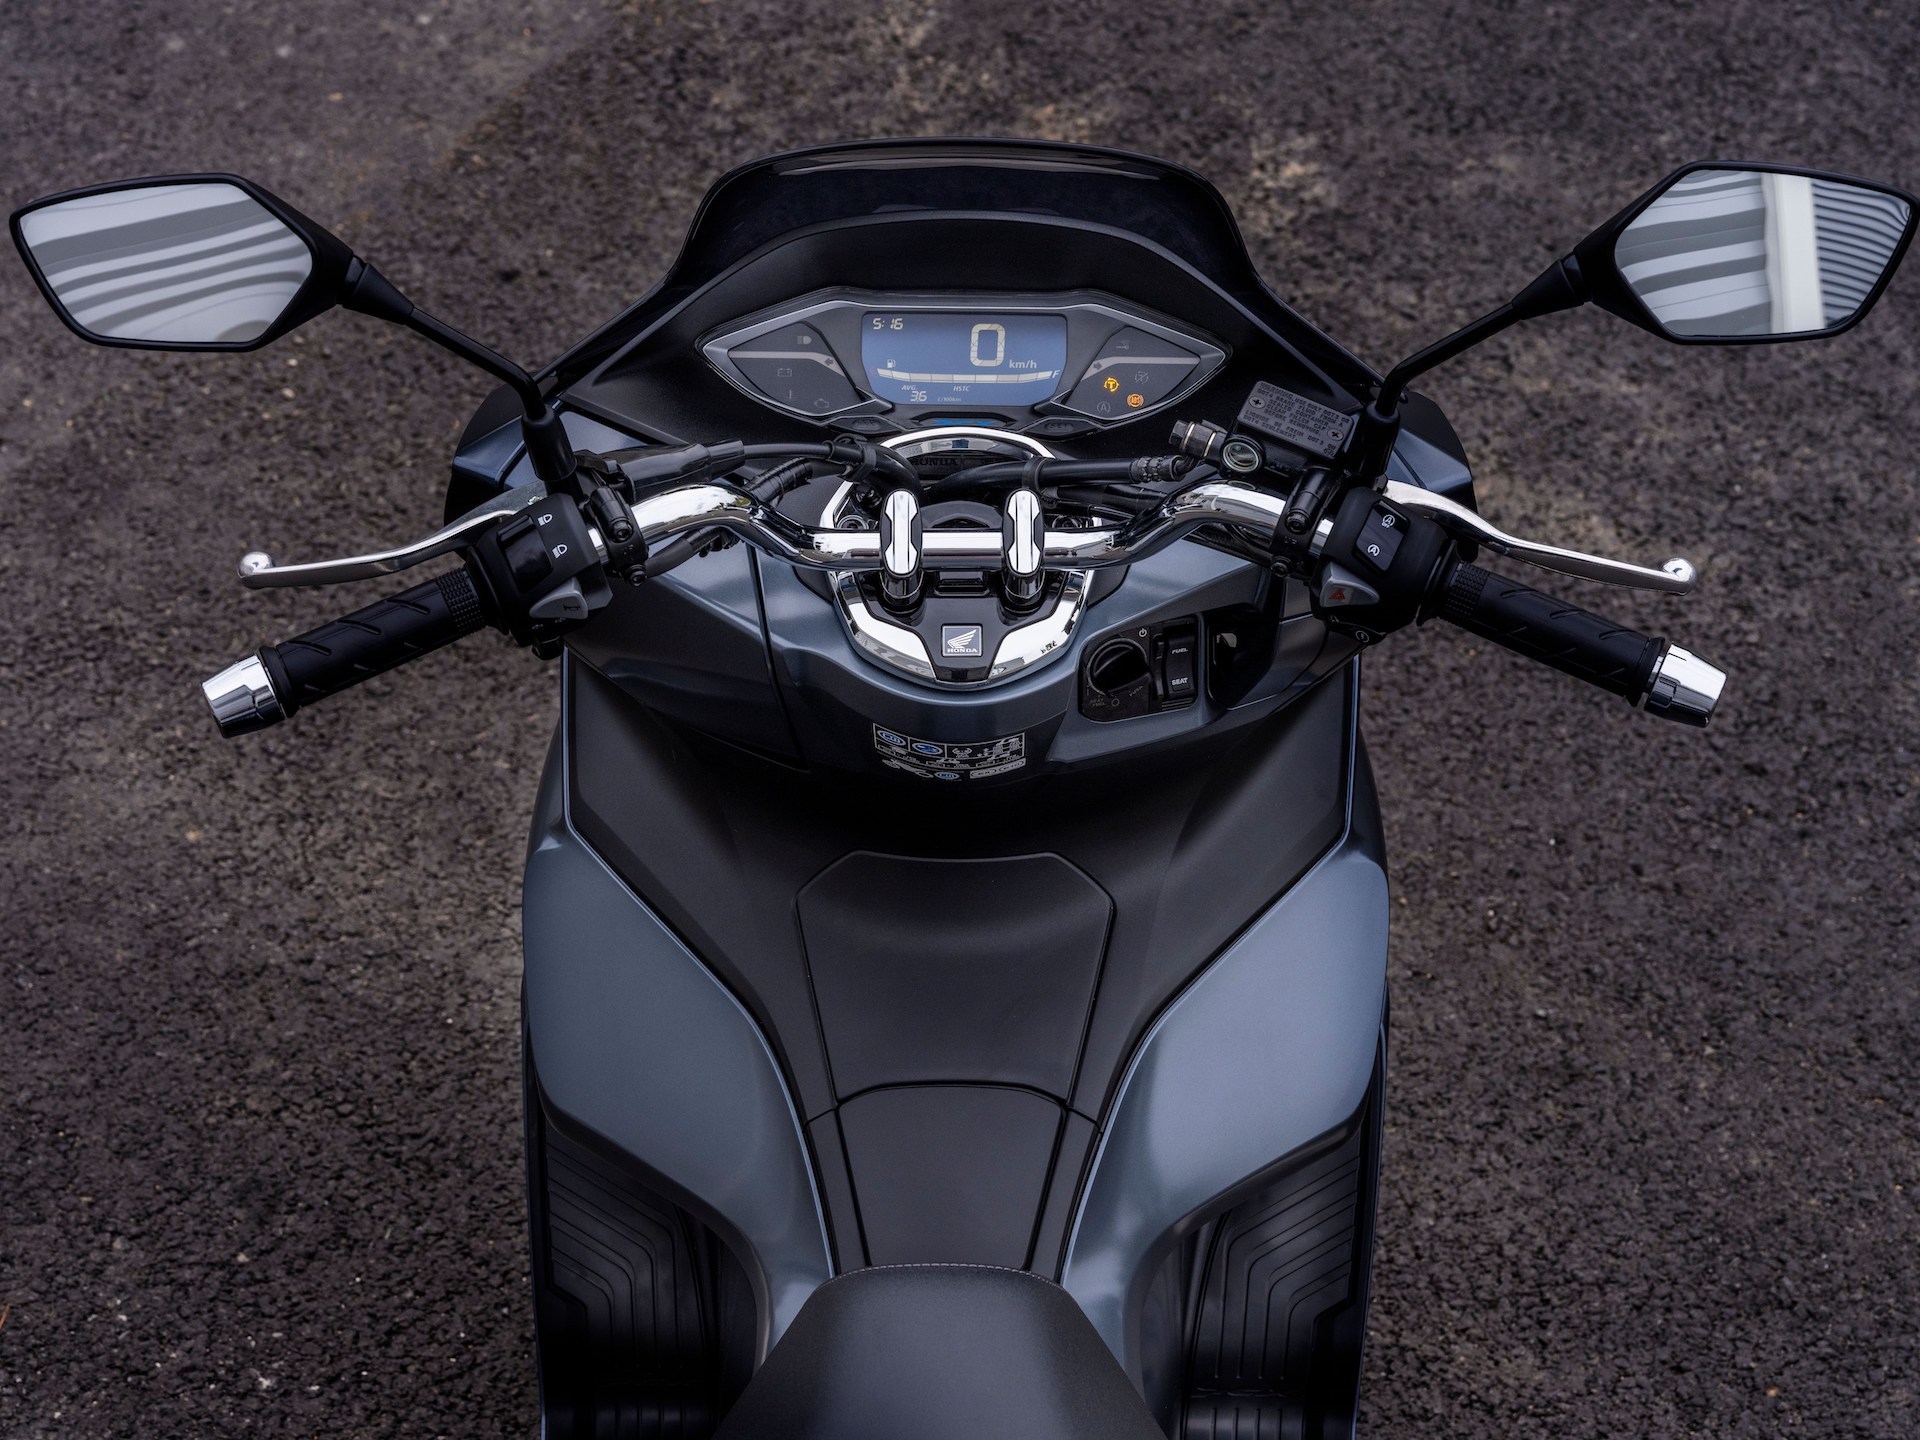 pellizco enaguas Paso Es una de las motocicletas con mejor calidad/precio, consume 2,1 litros/100  km y está en oferta por 3.250€ | Diariomotor